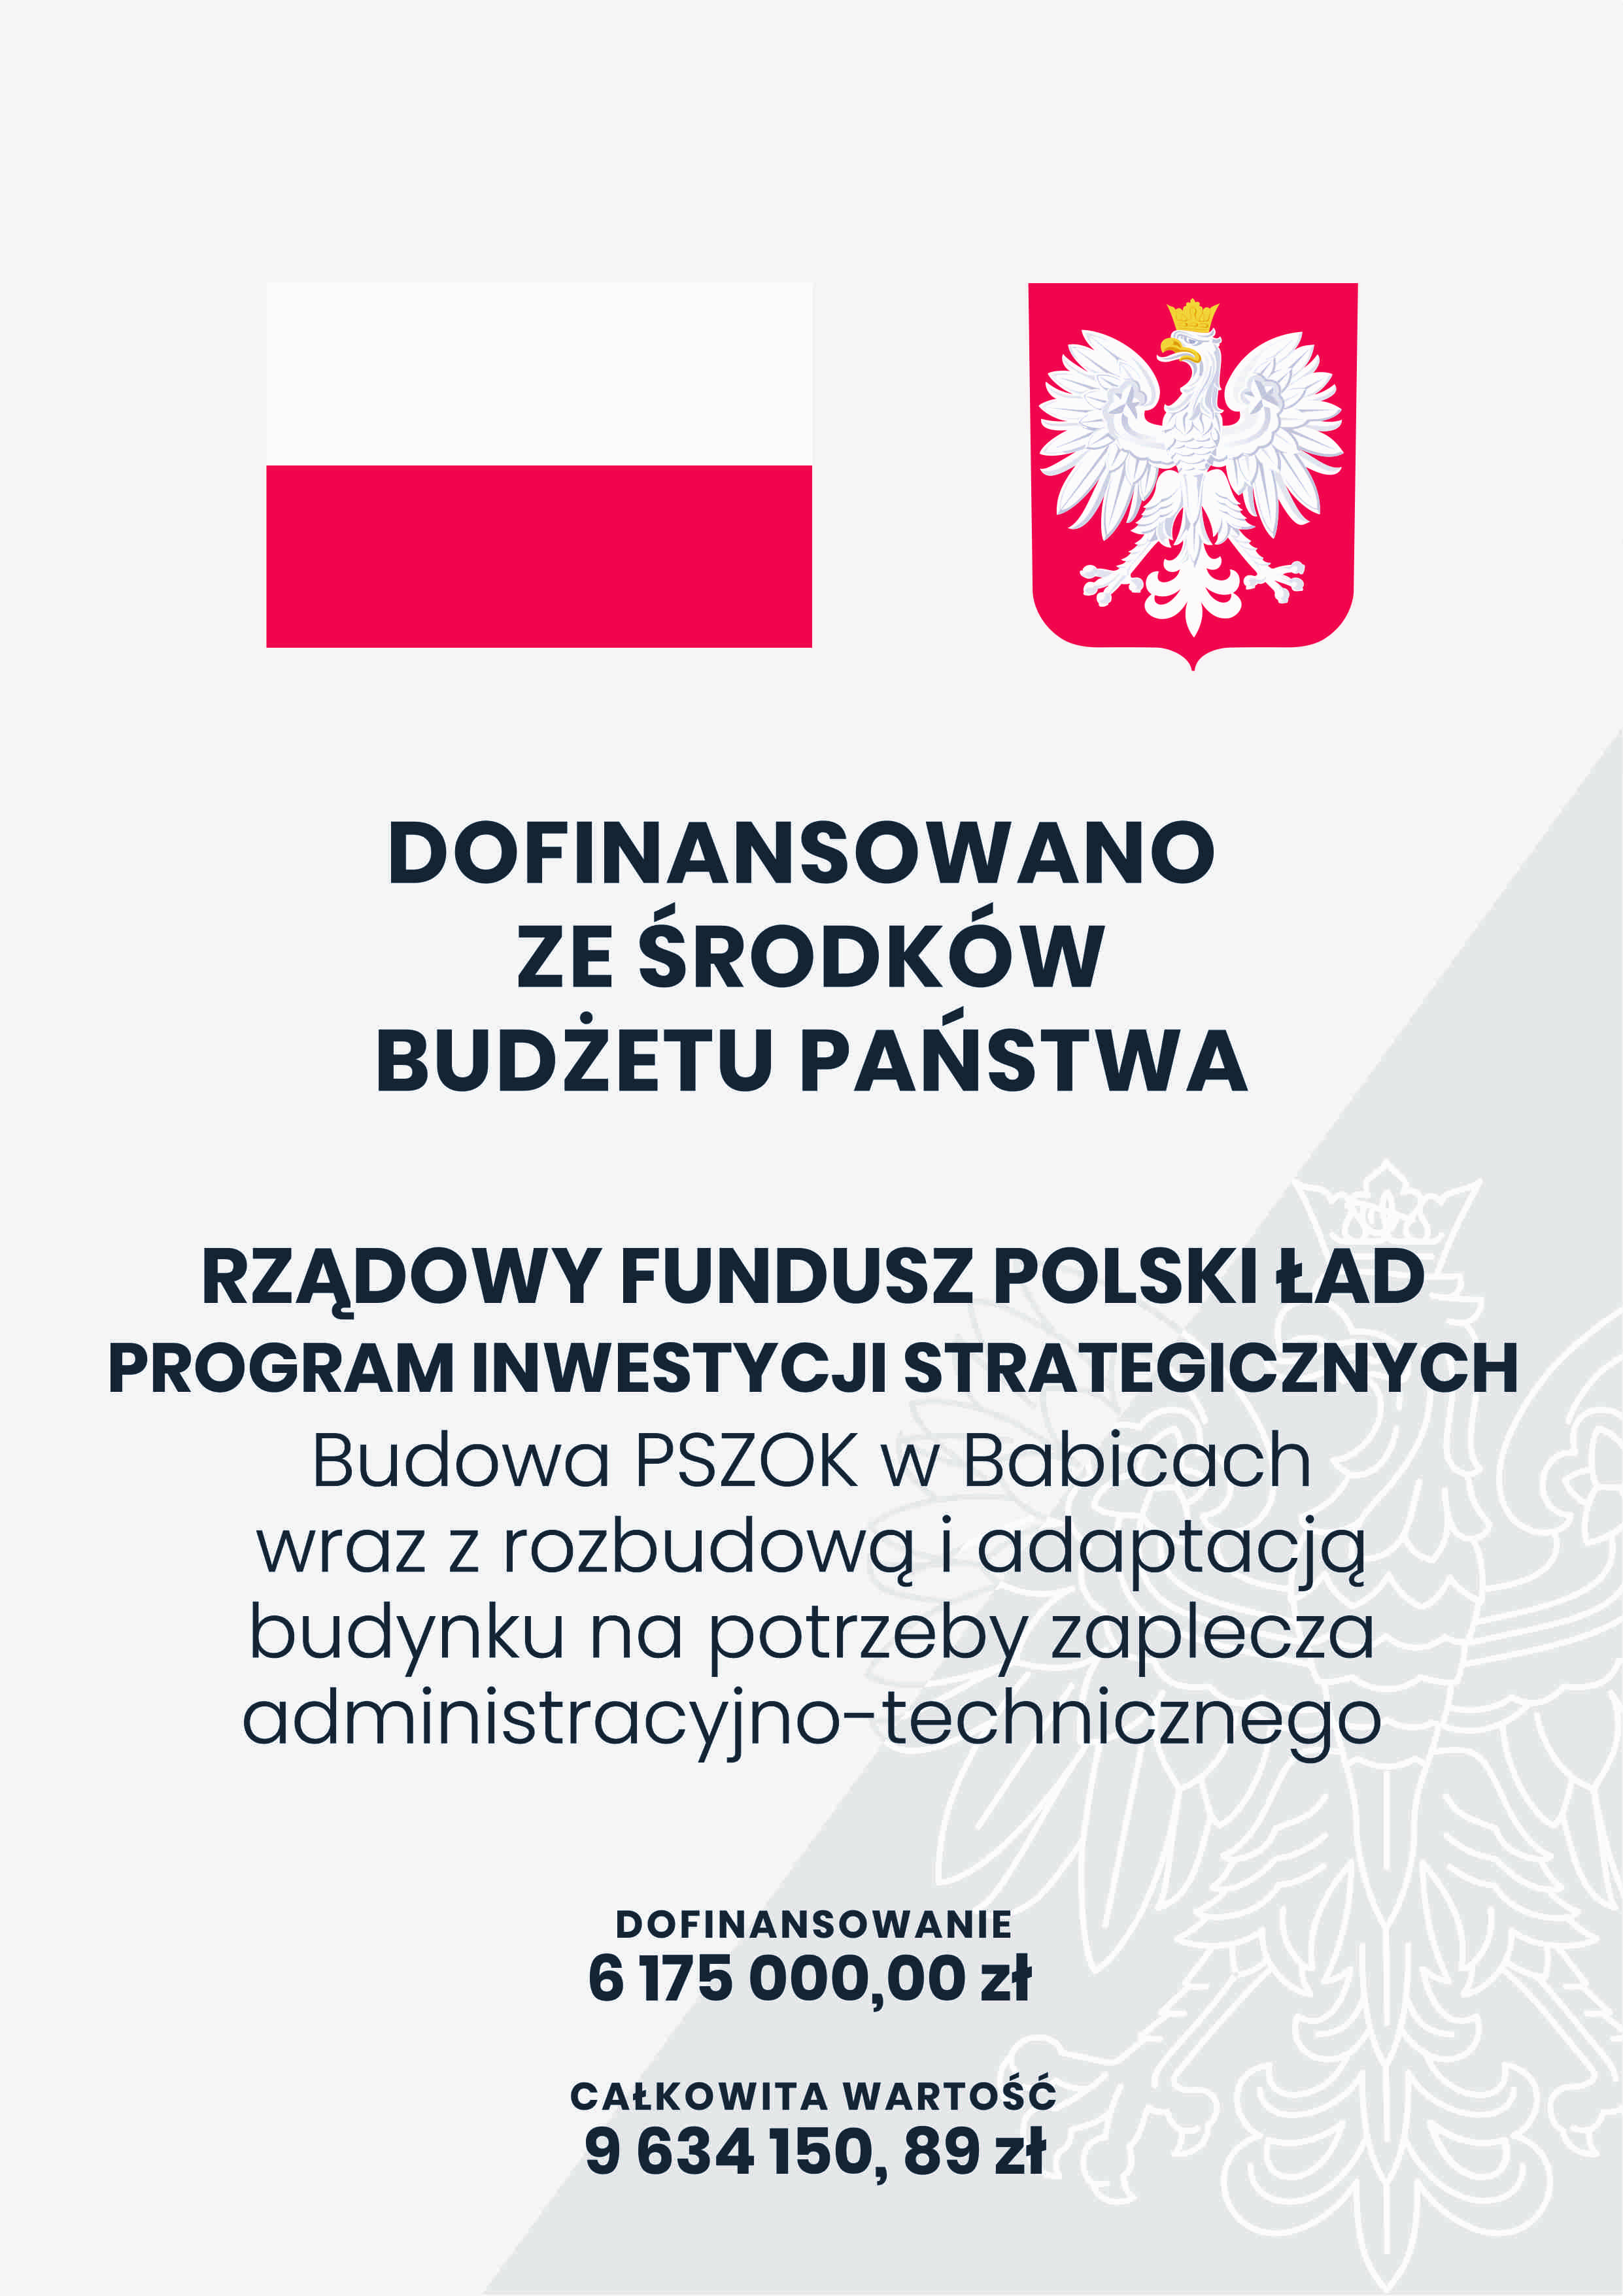 Polski Ład - dofinansowanie